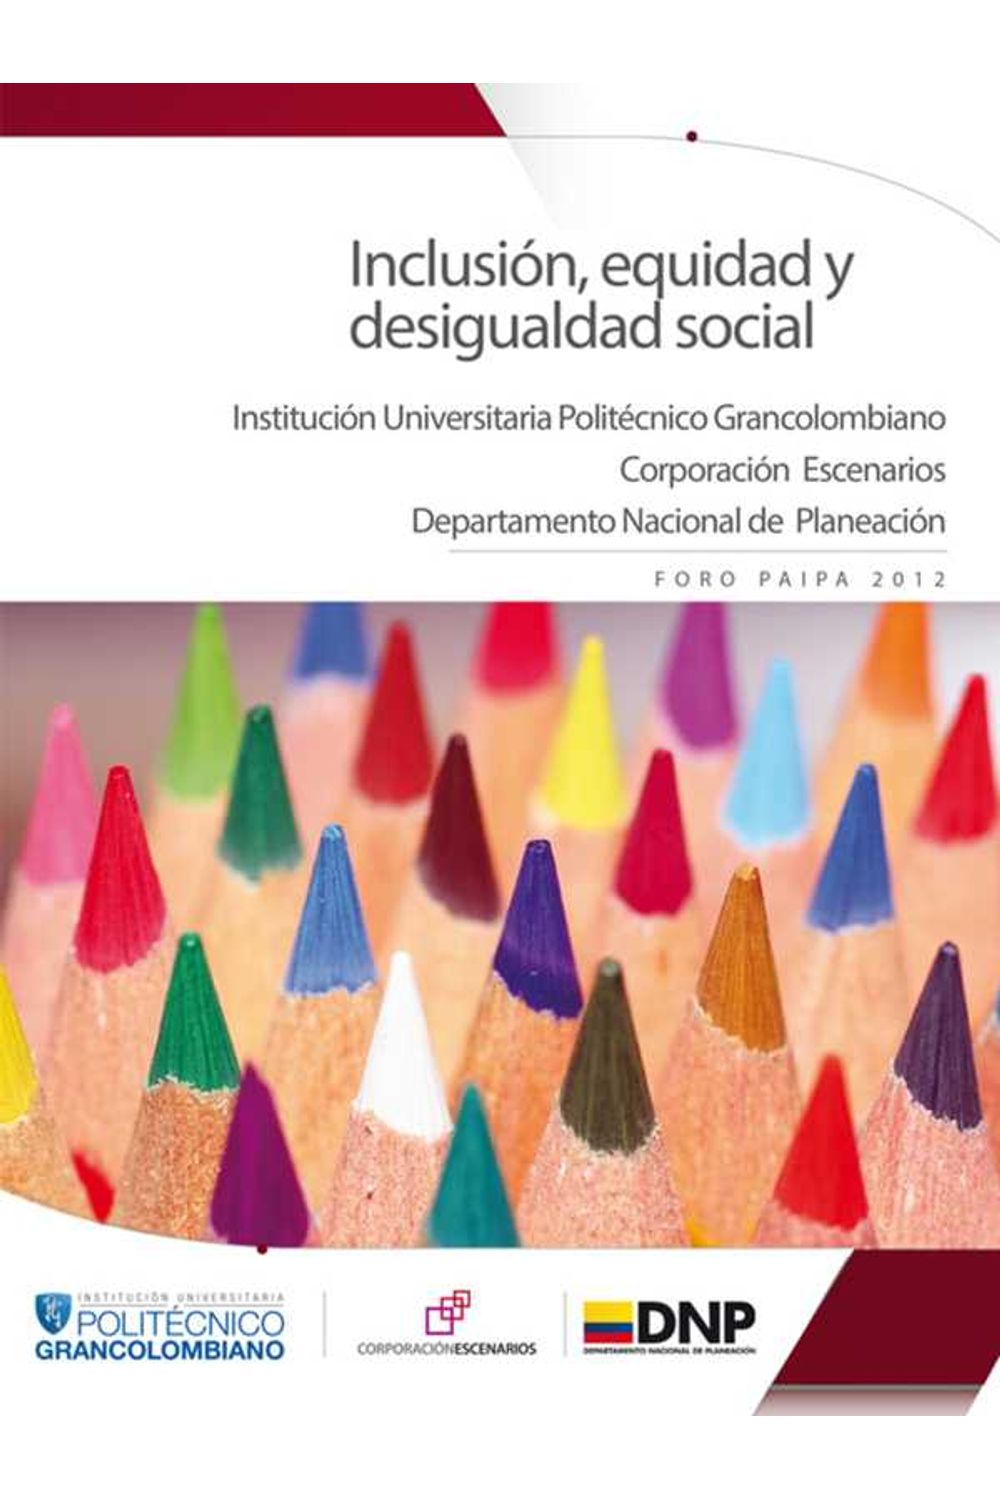 bm-inclusion-equidad-y-desigualdad-social-politecnico-grancolombiano-4912345678911